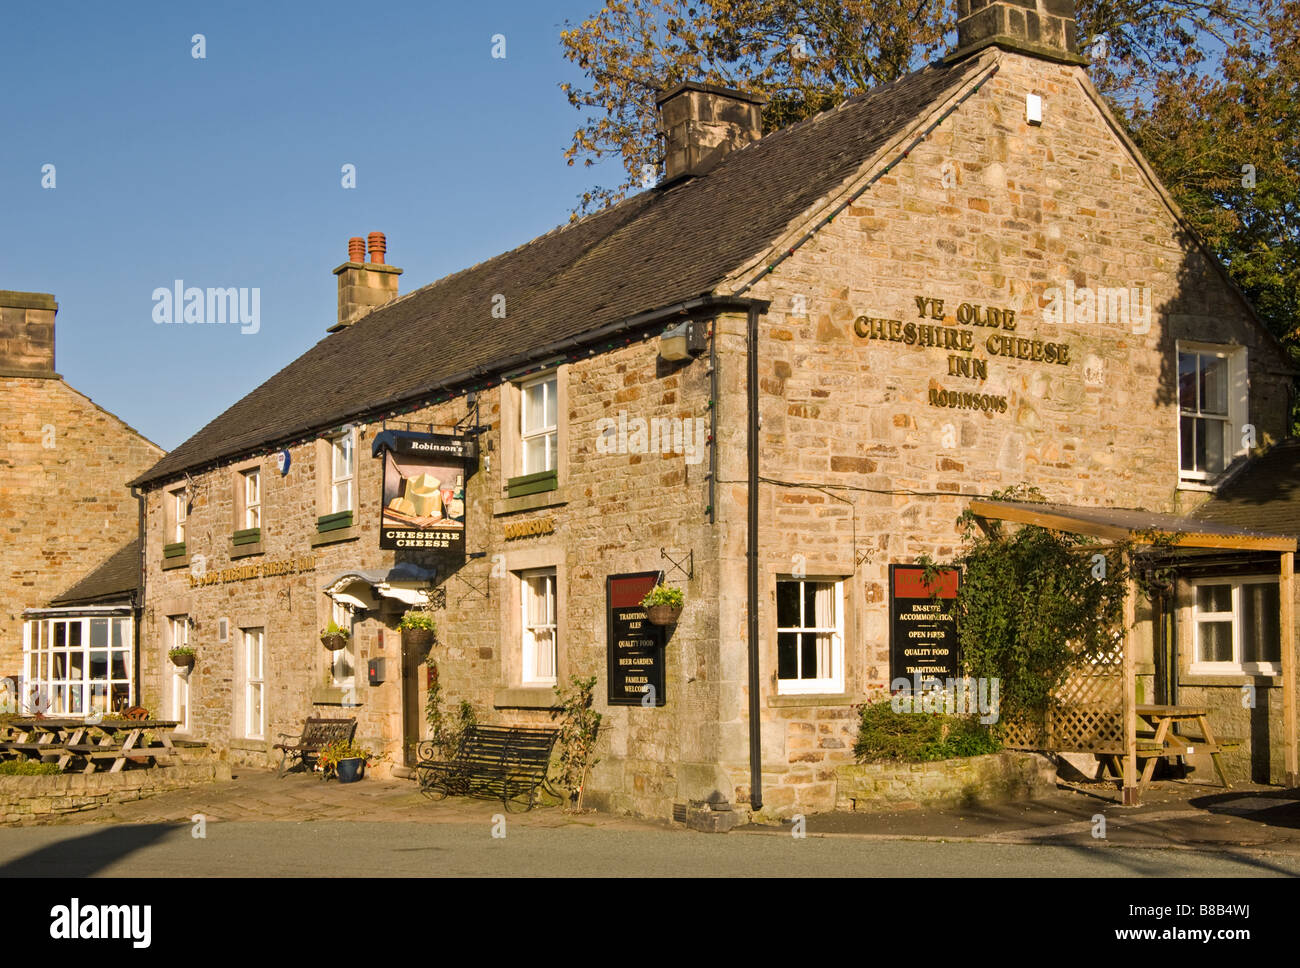 Ye Olde Cheshire Cheese Inn Public House, villaggio di Longnor, Parco Nazionale di Peak District, Derbyshire, England, Regno Unito Foto Stock